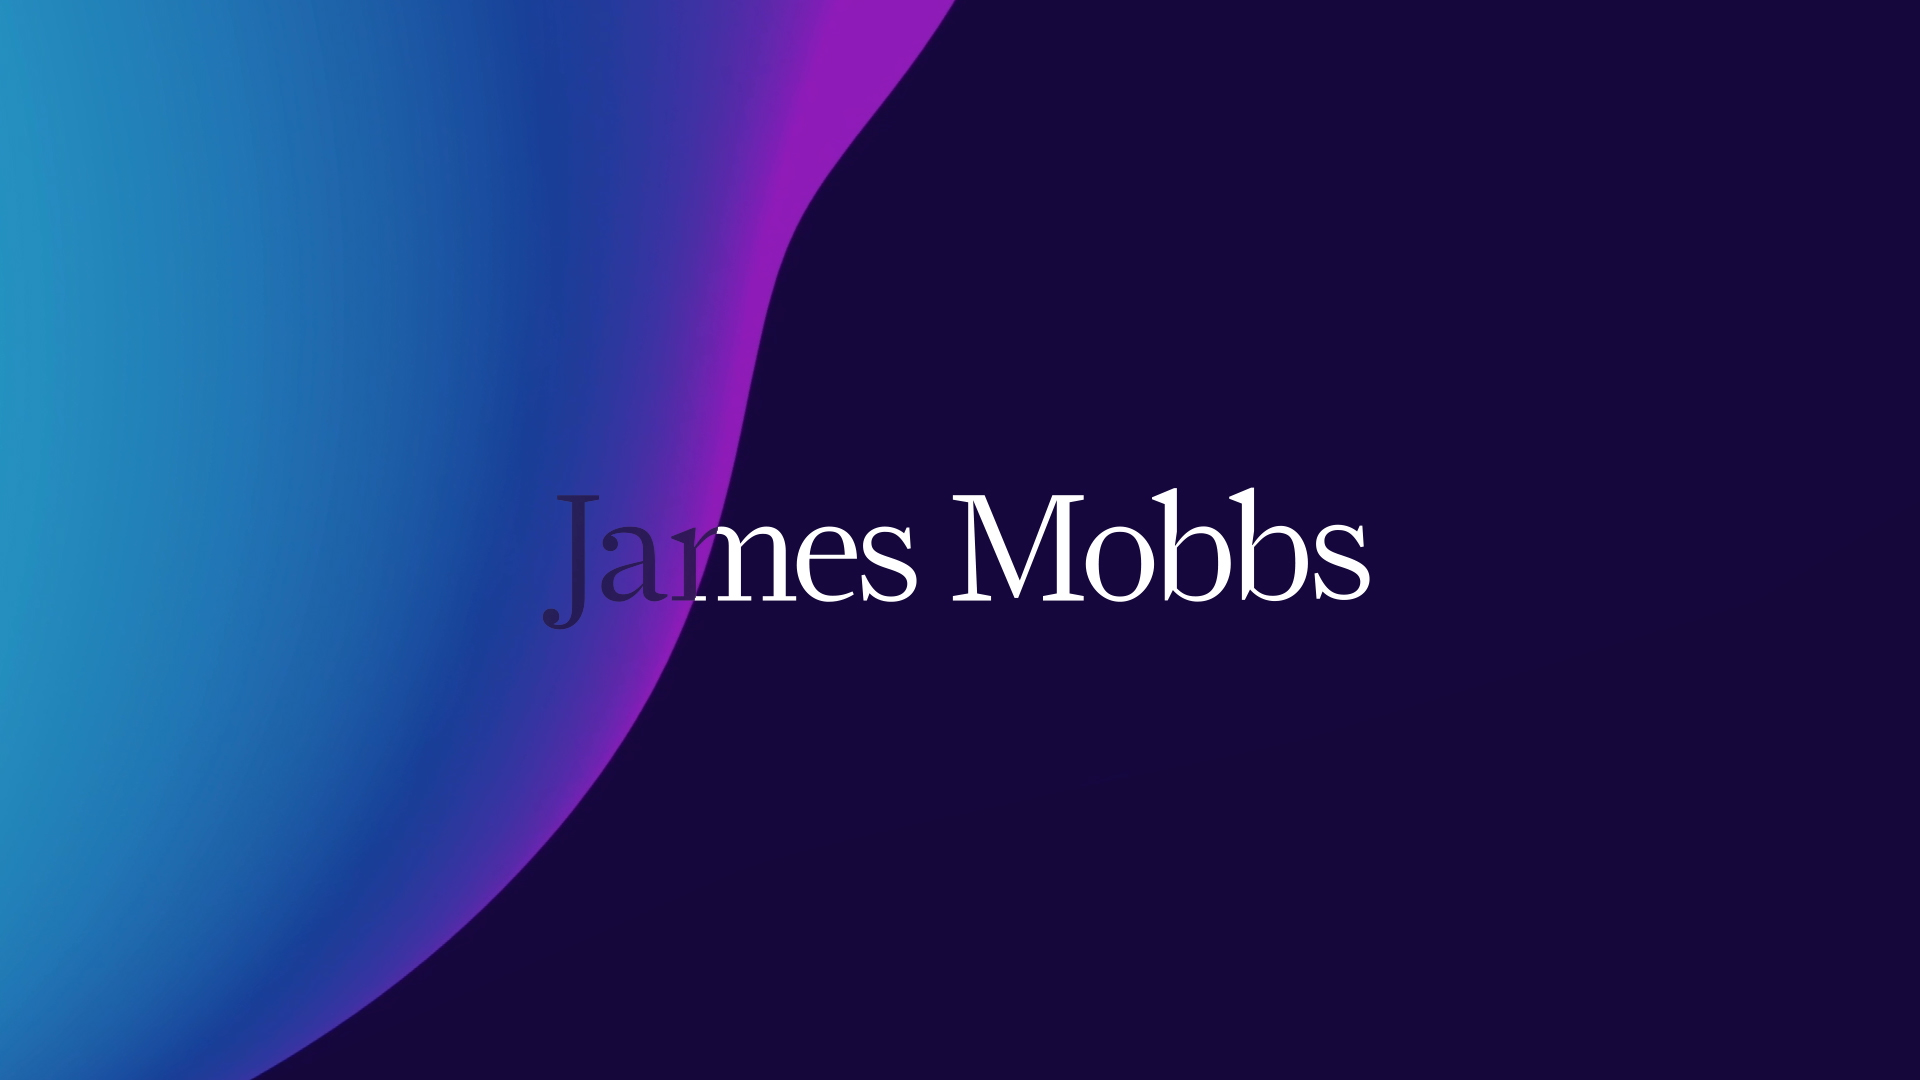 James Mobbs – Freelance Senior Designer